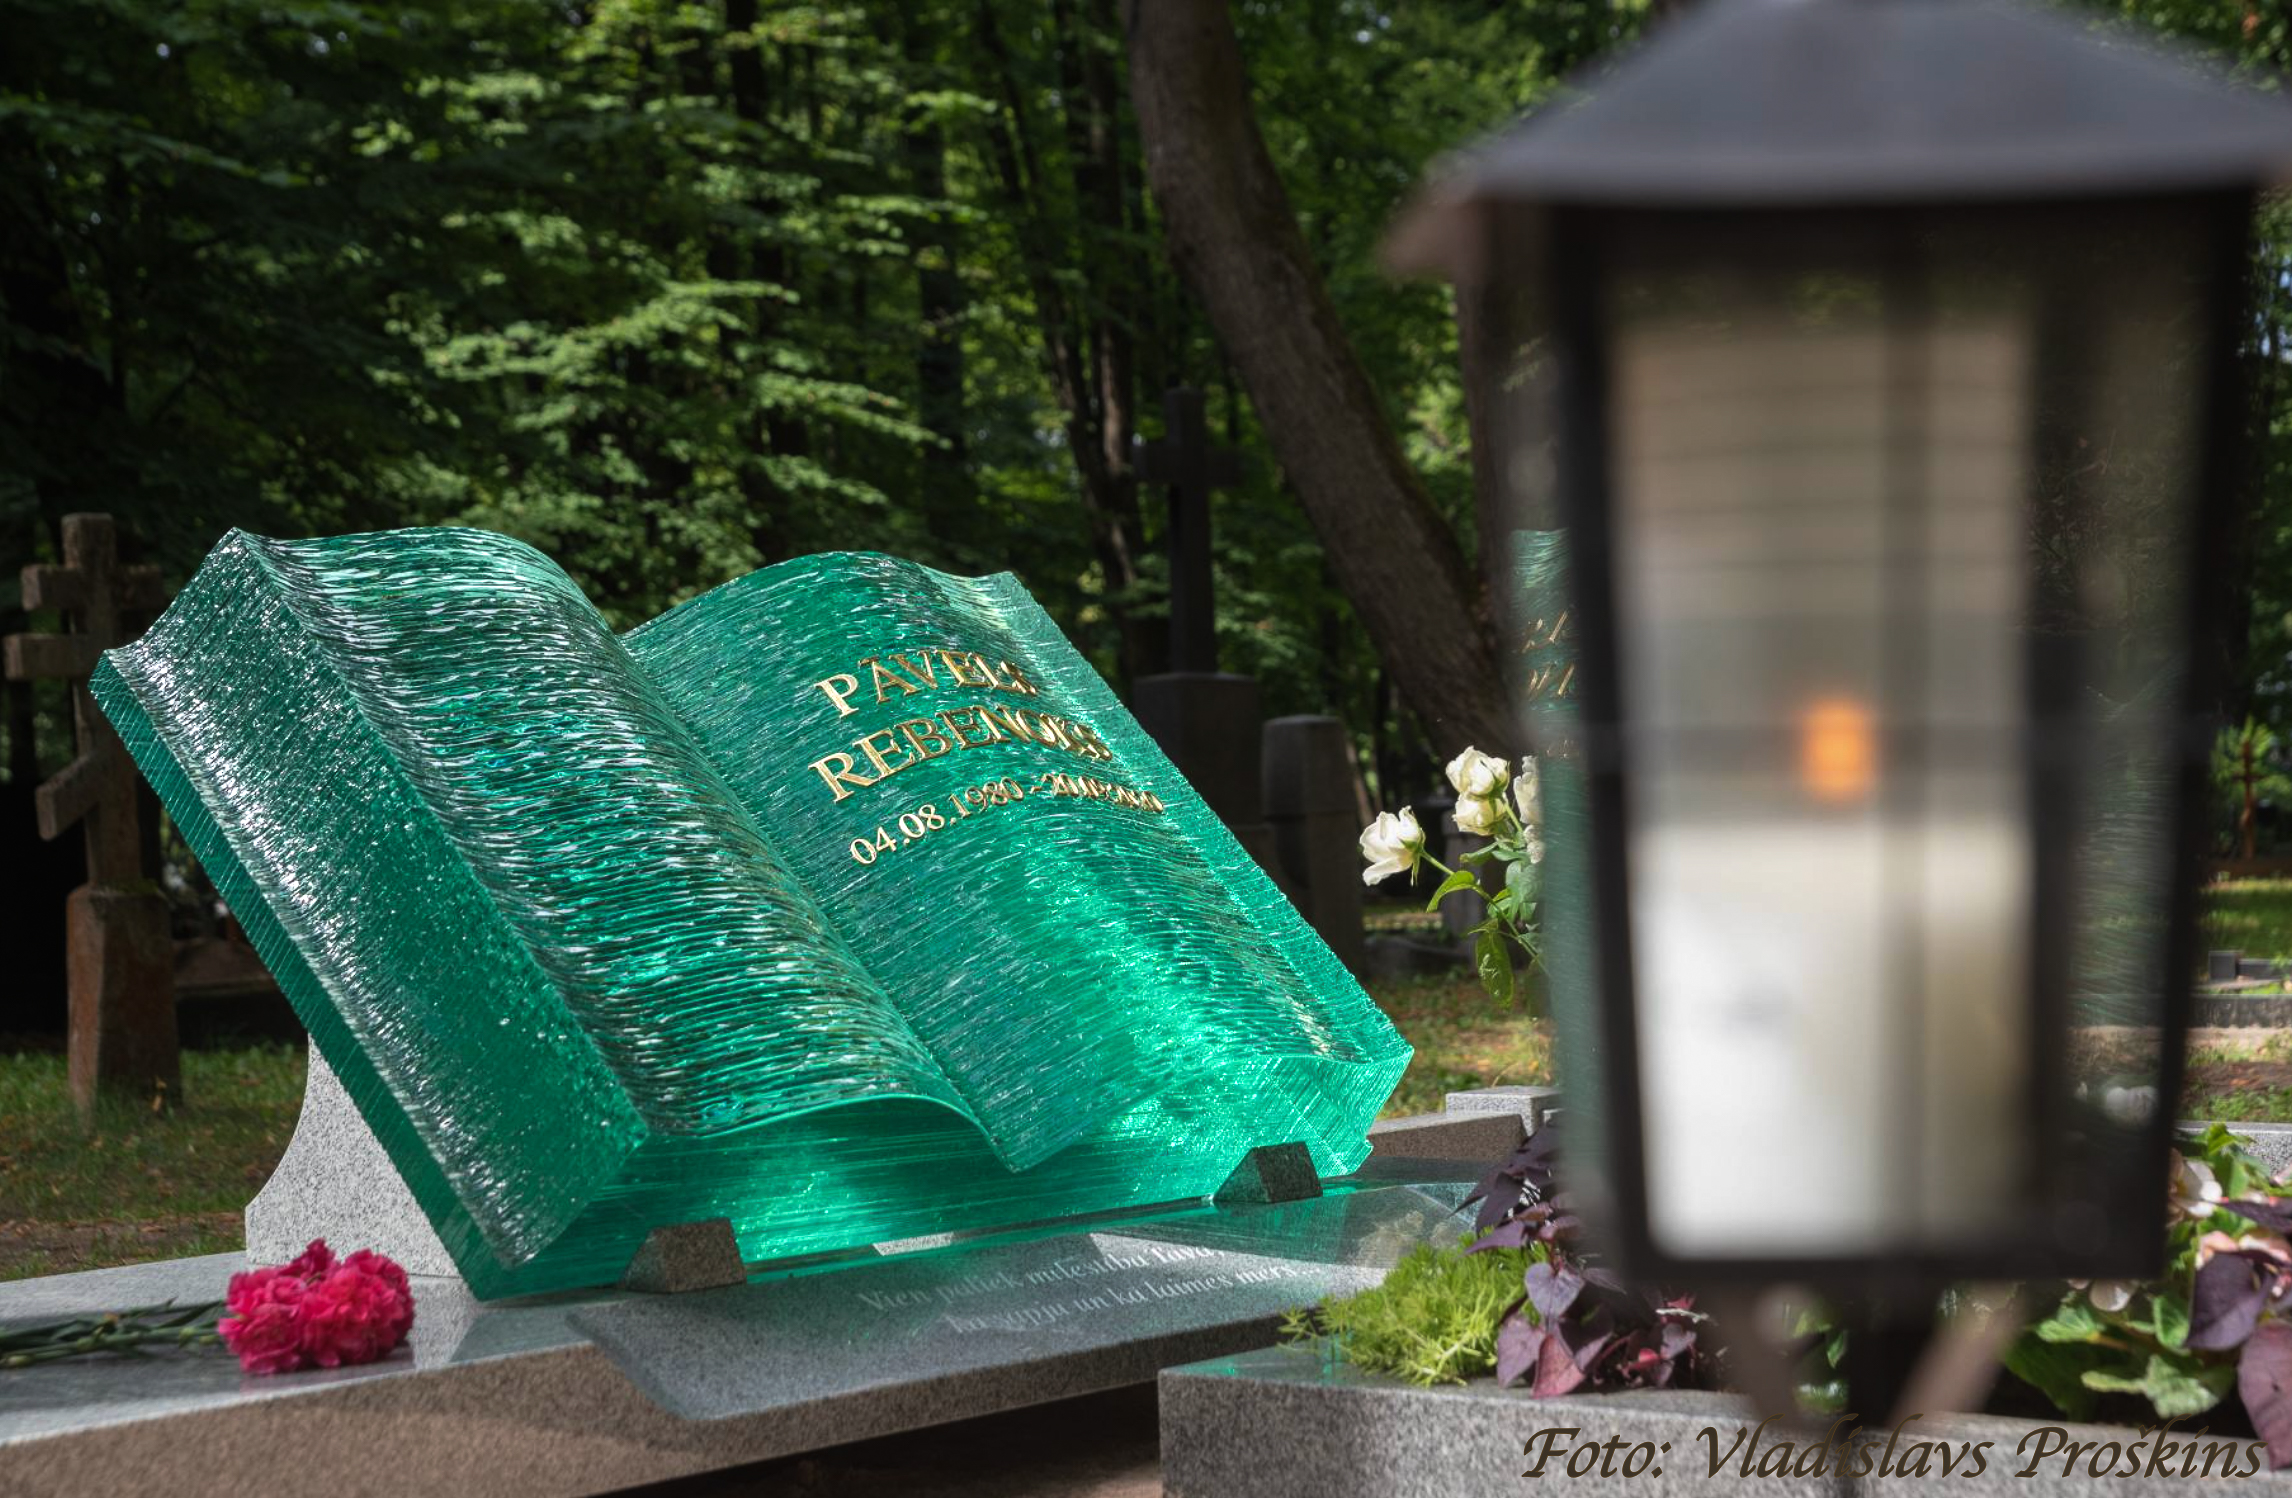 Besonderer Grabstein in Form eines Buches aus Glas, Grabsteinbuch, Grabstein in Form eines Buches, Grabdenkmal in Form eines Buches, Grabstein aus Glas, Grabdenkmal aus Glas